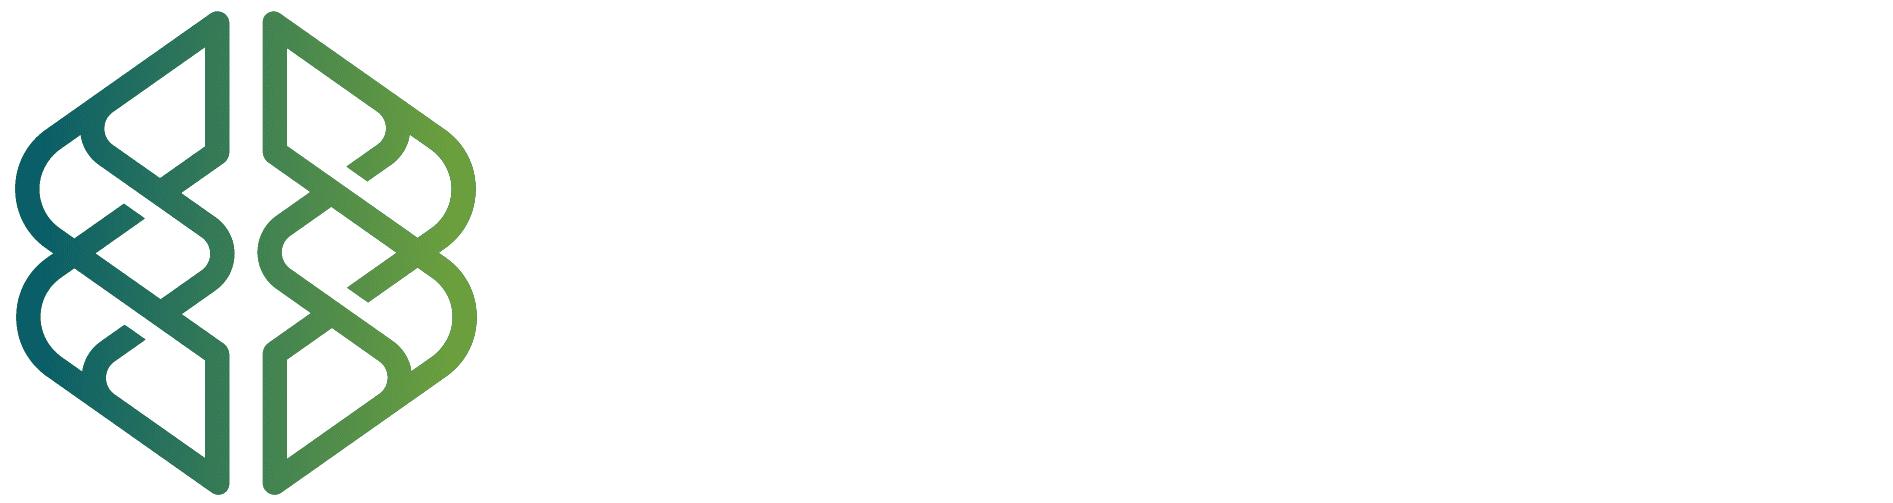 Monroe Concierge